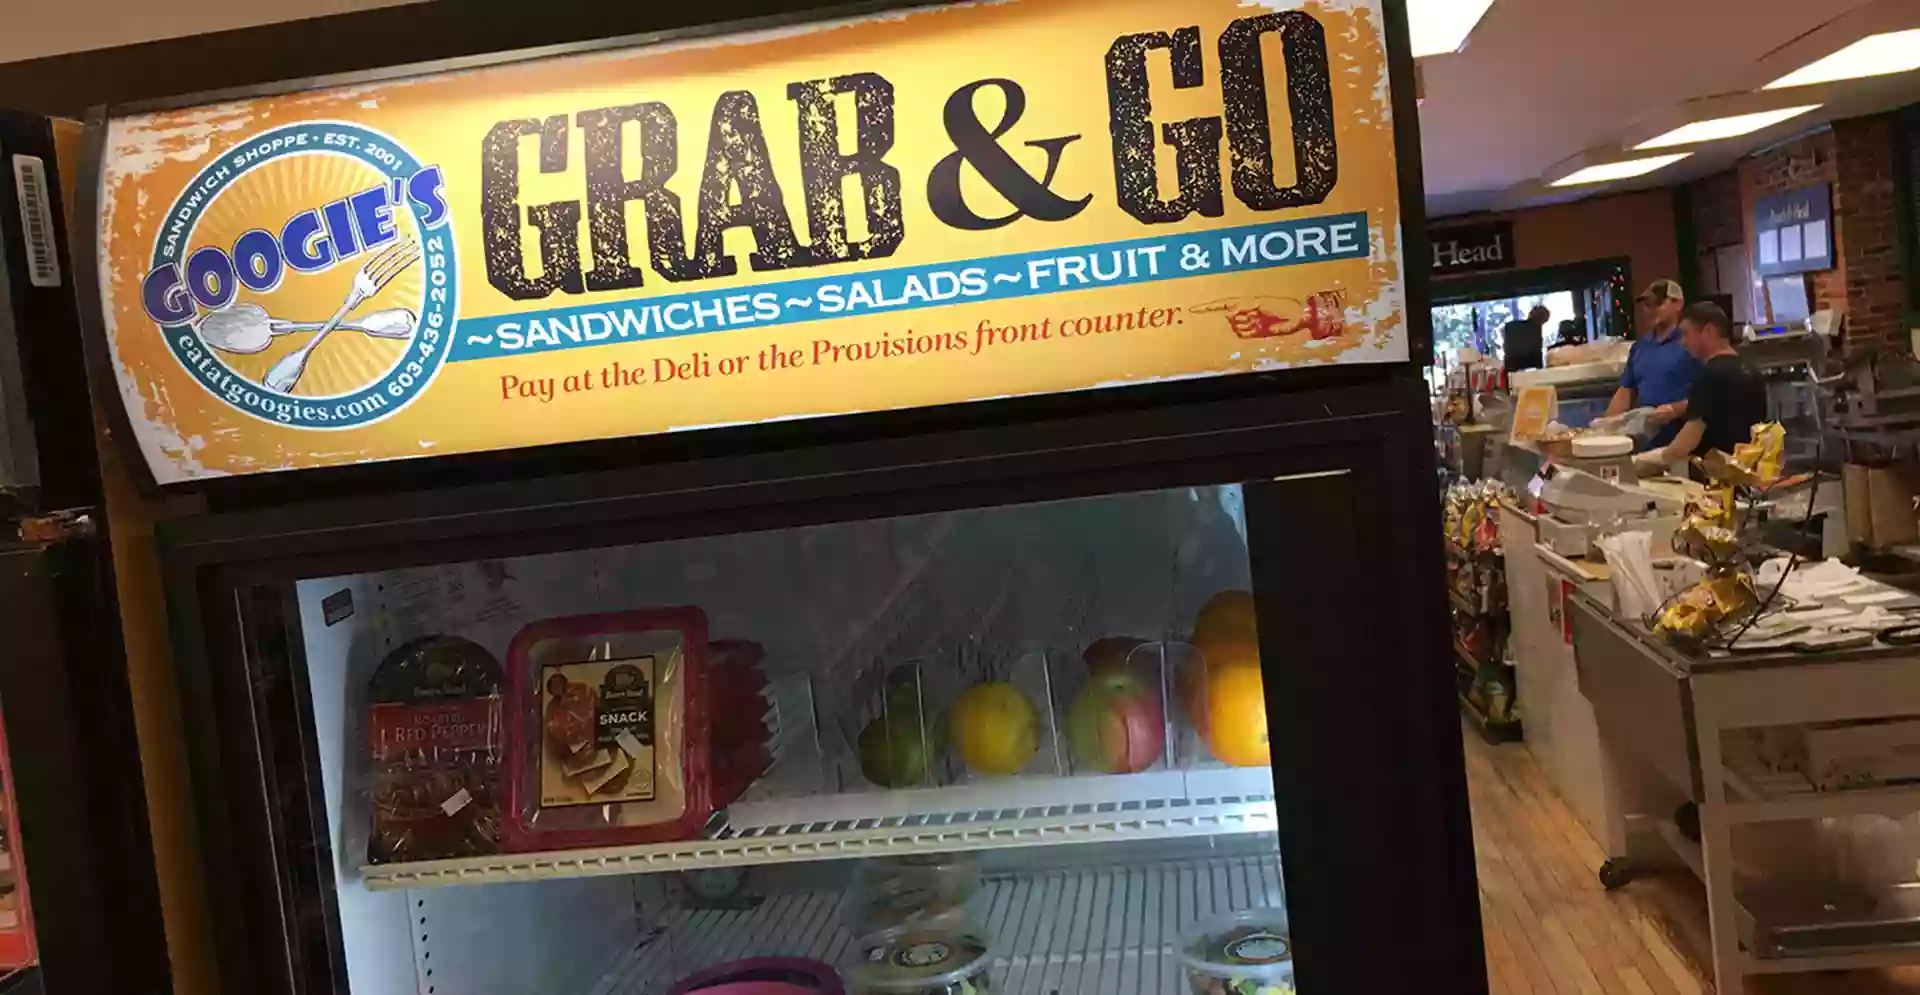 Googie's Sandwich Shoppe